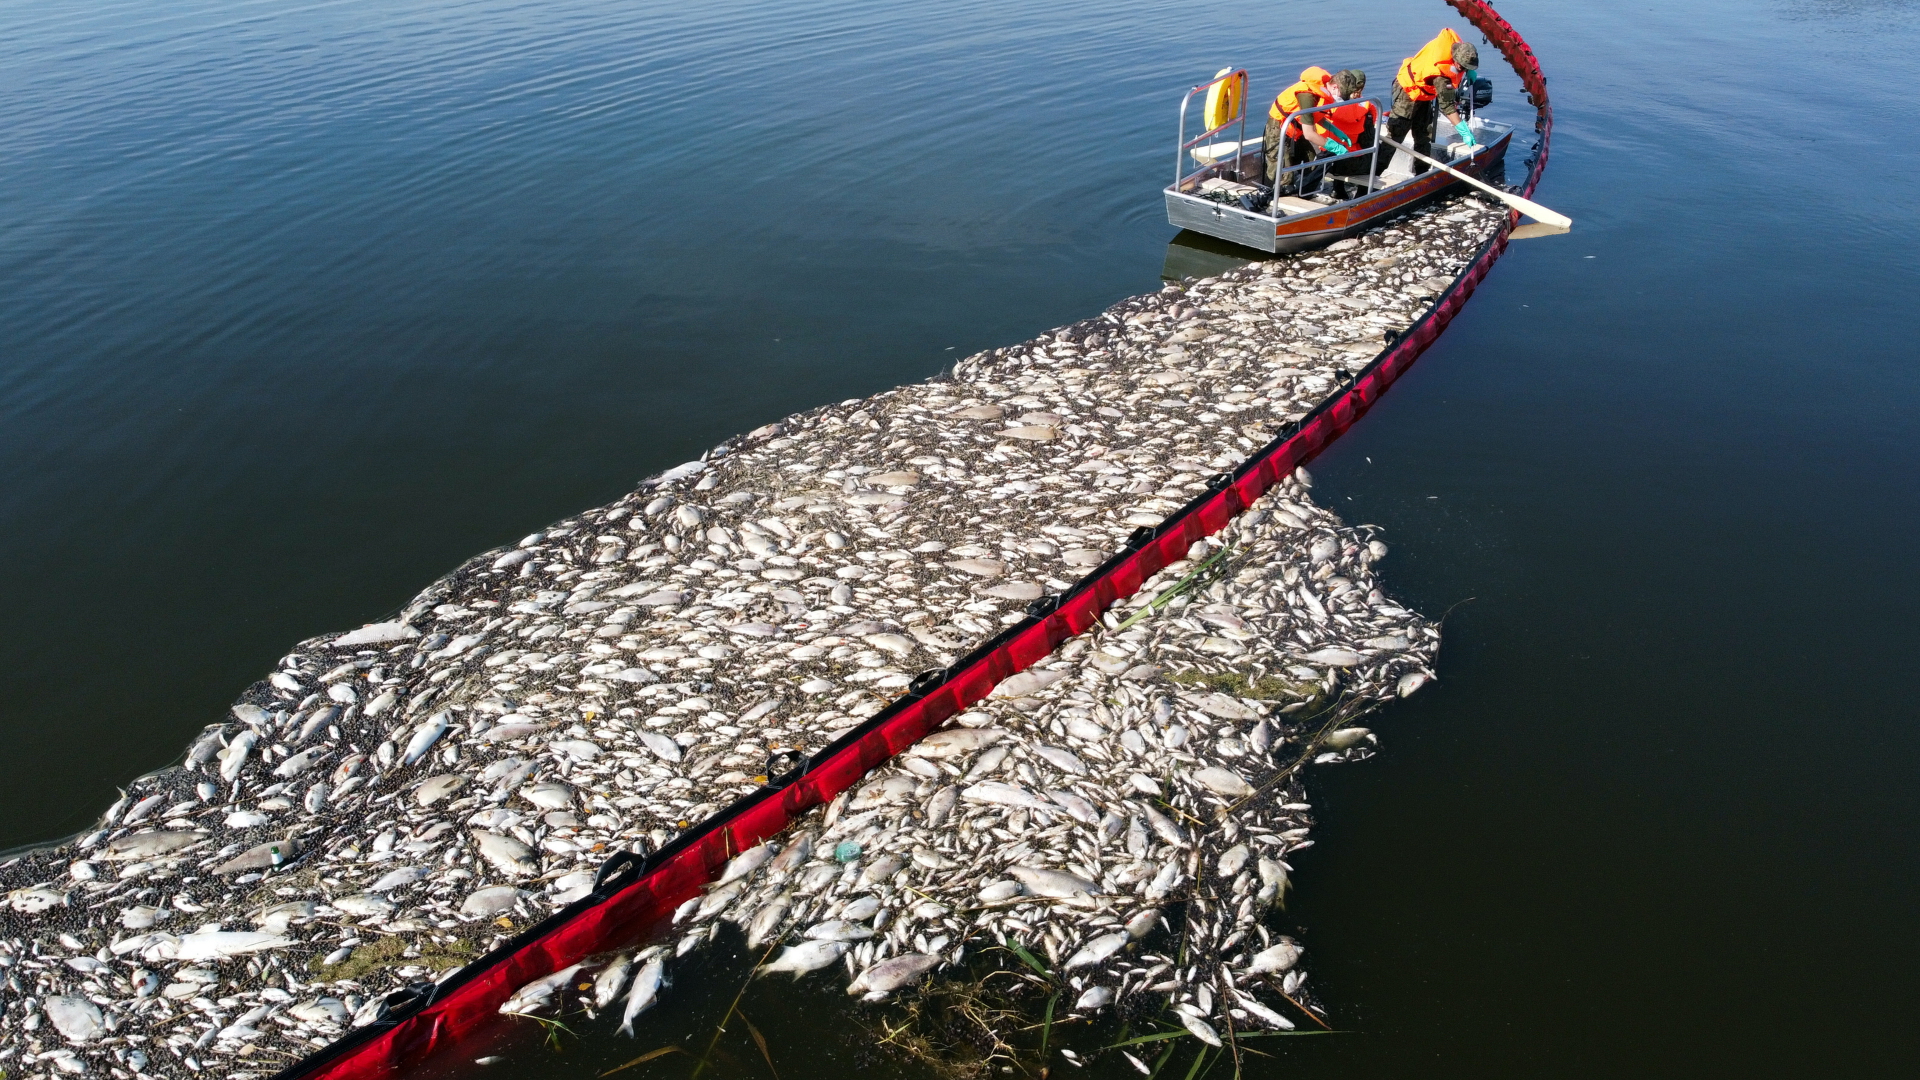 Polnische Arbeiter beteiligen sich an einer Aktion zur Reinigung der Oder von toten Fischen mit Hilfe eines flexiblen Damms. | dpa